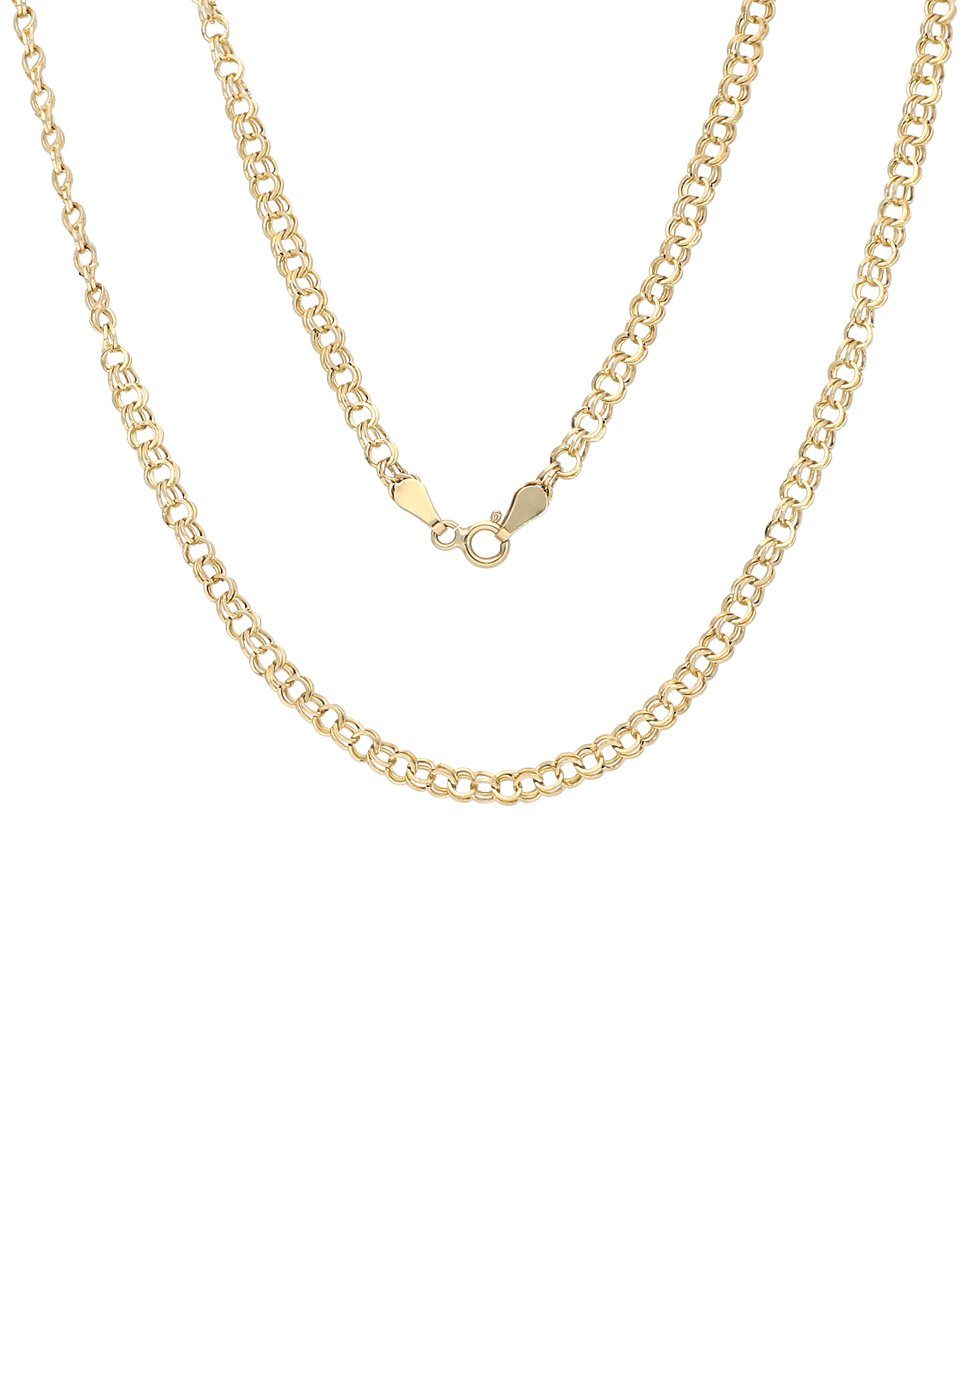 Firetti Goldkette Schmuck Geschenk Gold 375 Halsschmuck Halskette Goldkette Garibaldi, zu Kleid, Shirt, Jeans, Sneaker! Anlass Geburtstag Weihnachten